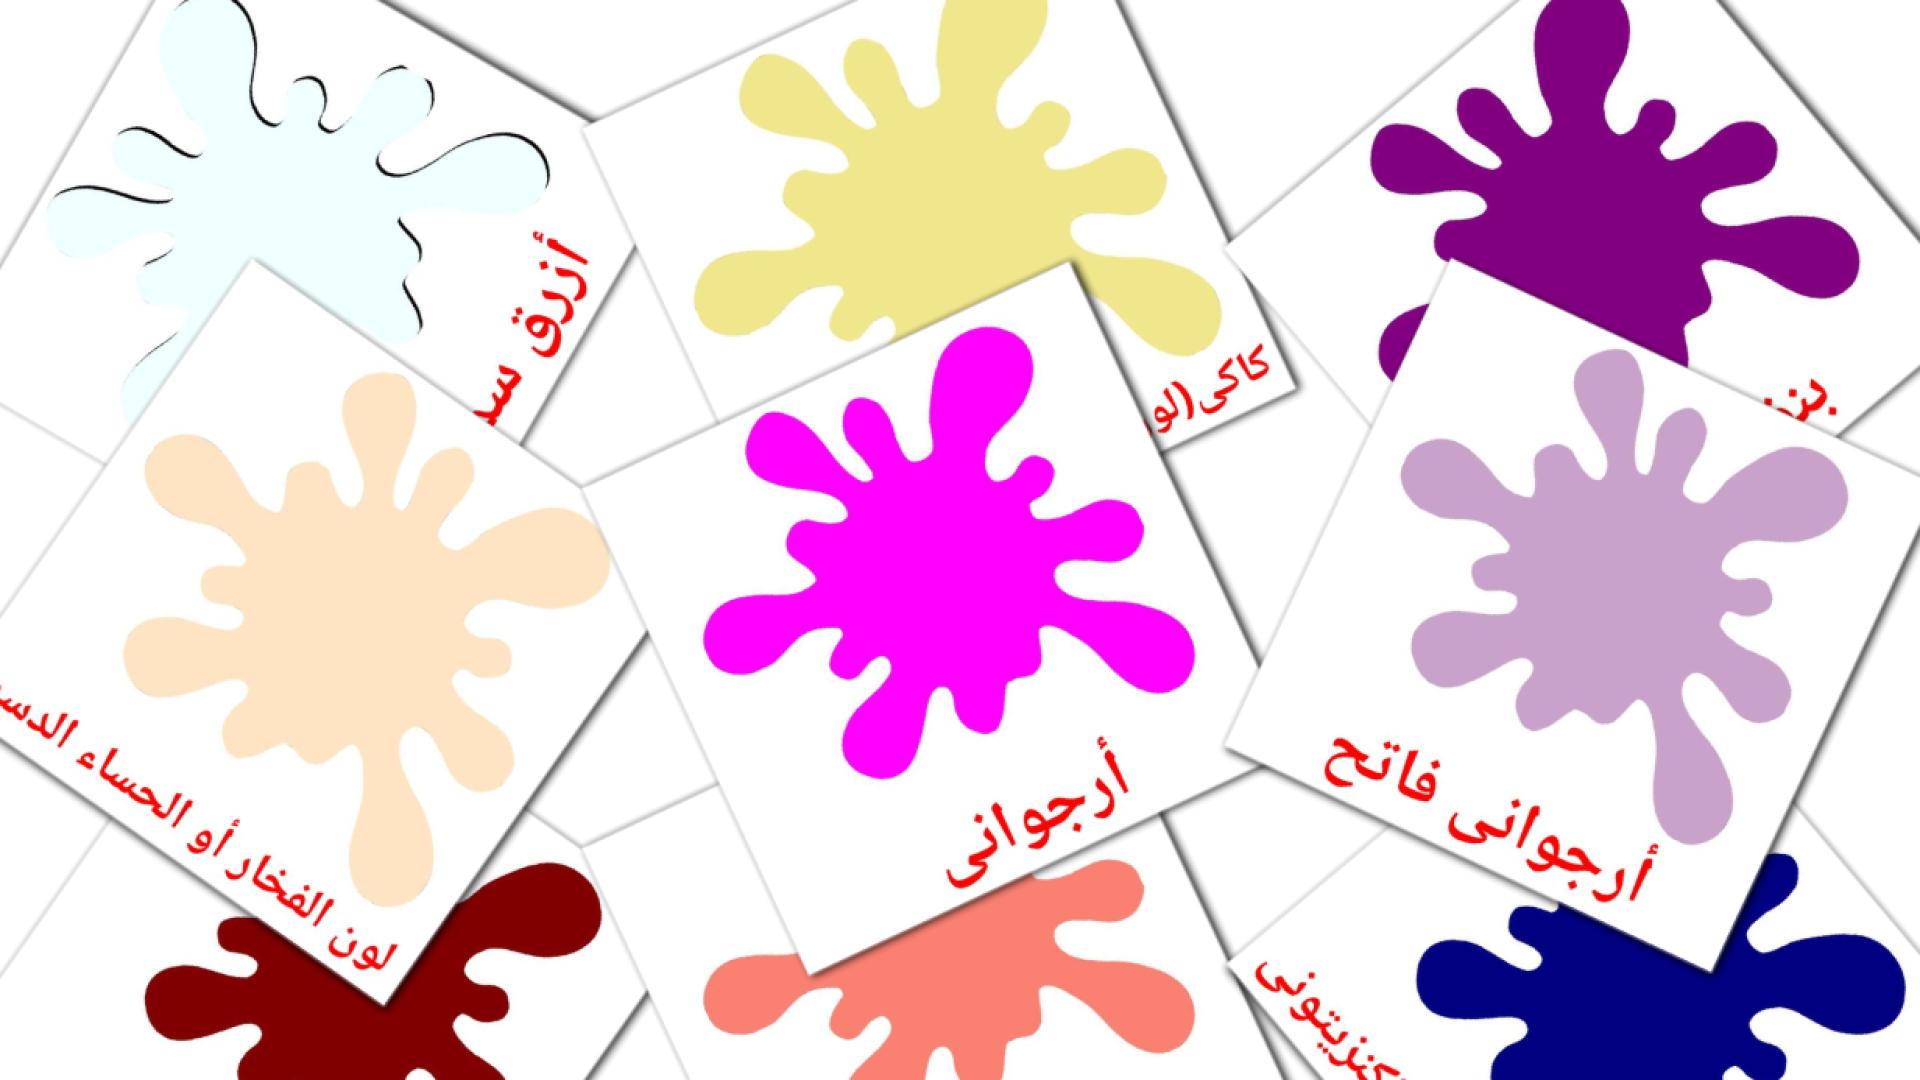 Colores secundarios - tarjetas de vocabulario en árabe